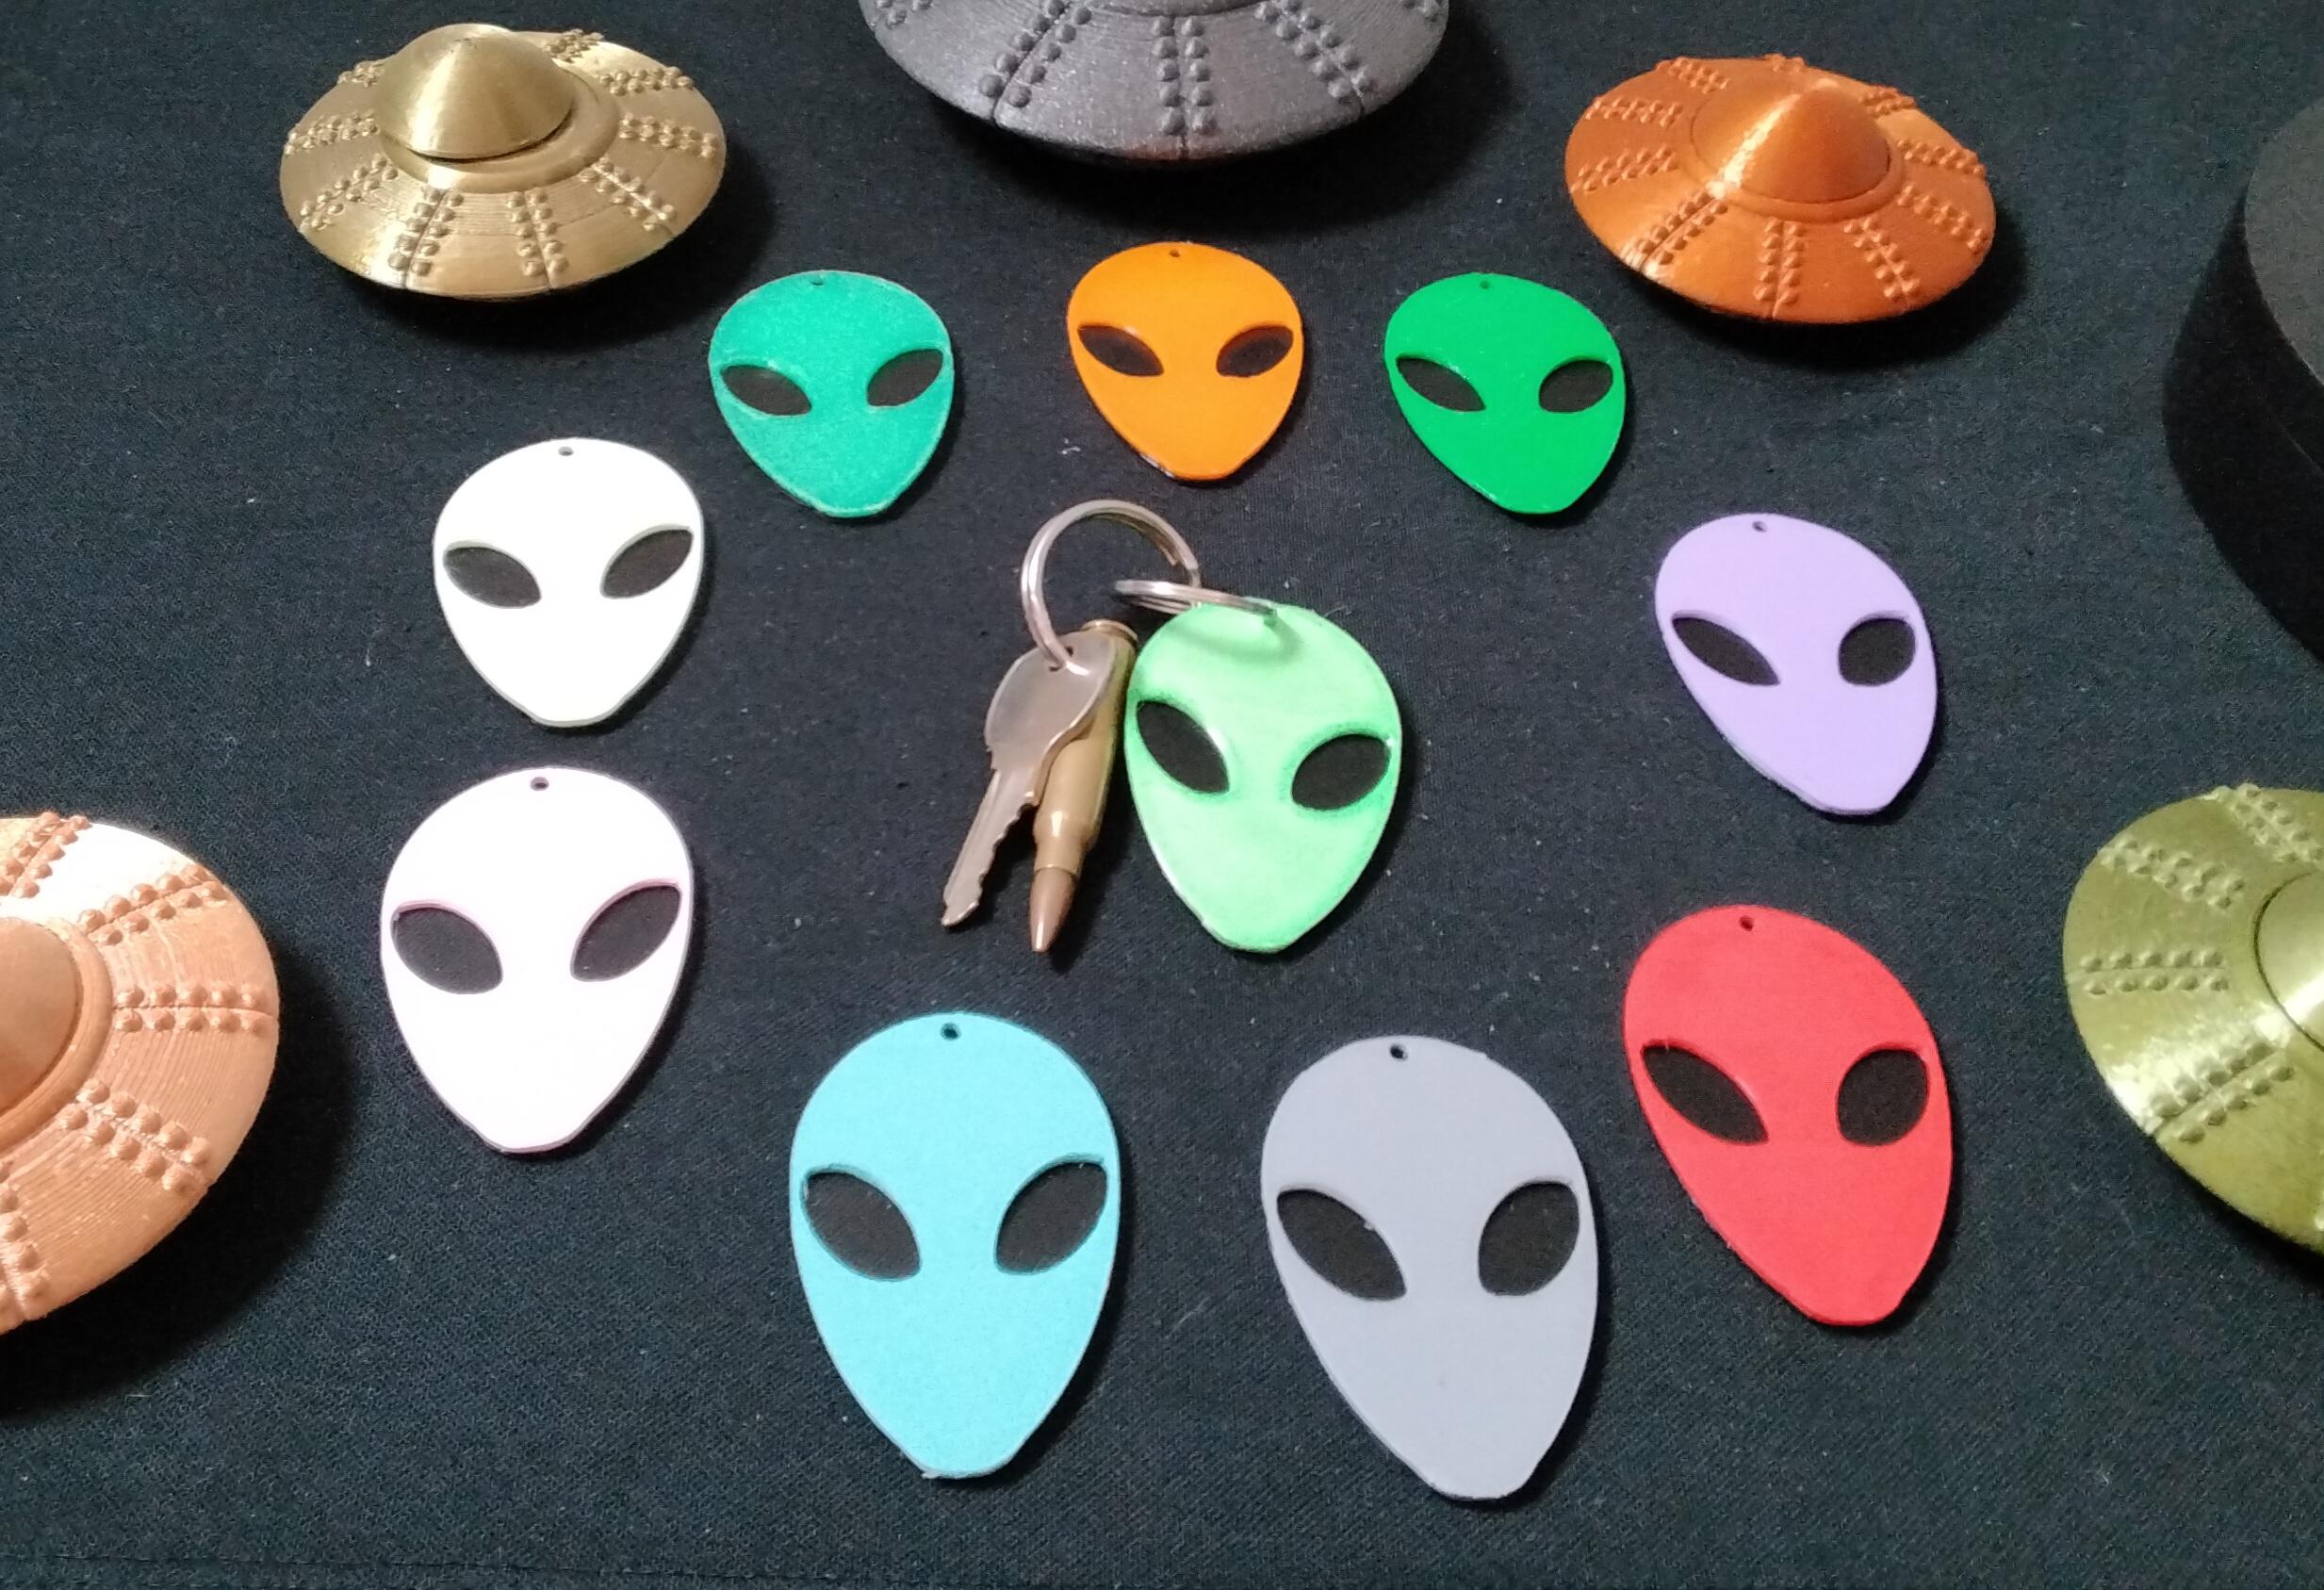 alien face keychain 3d model